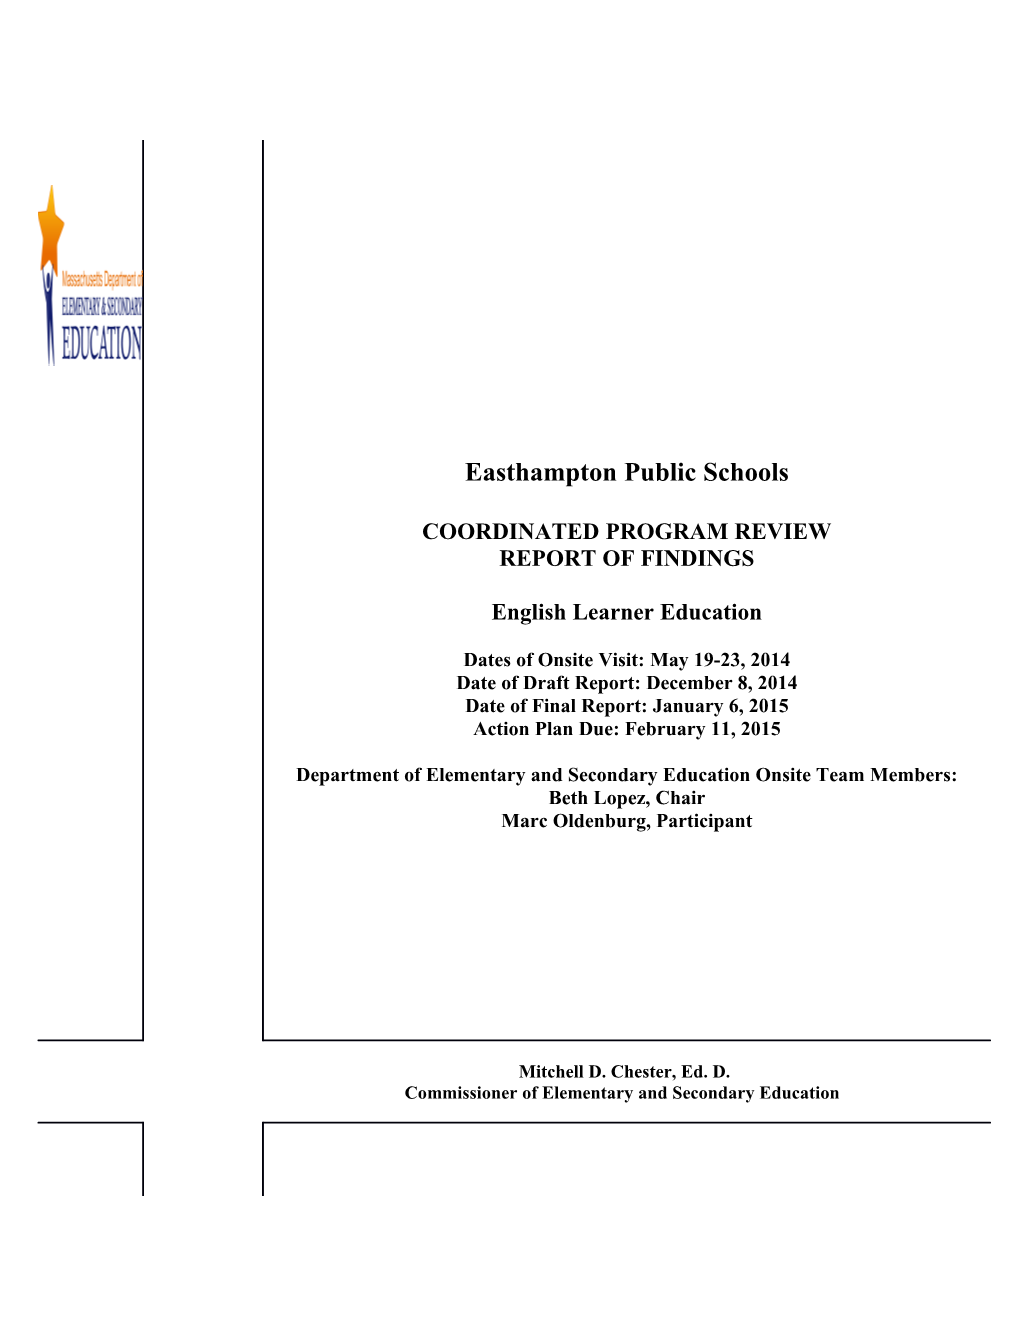 Easthampton Public Schools CPR Final Report 2013-14